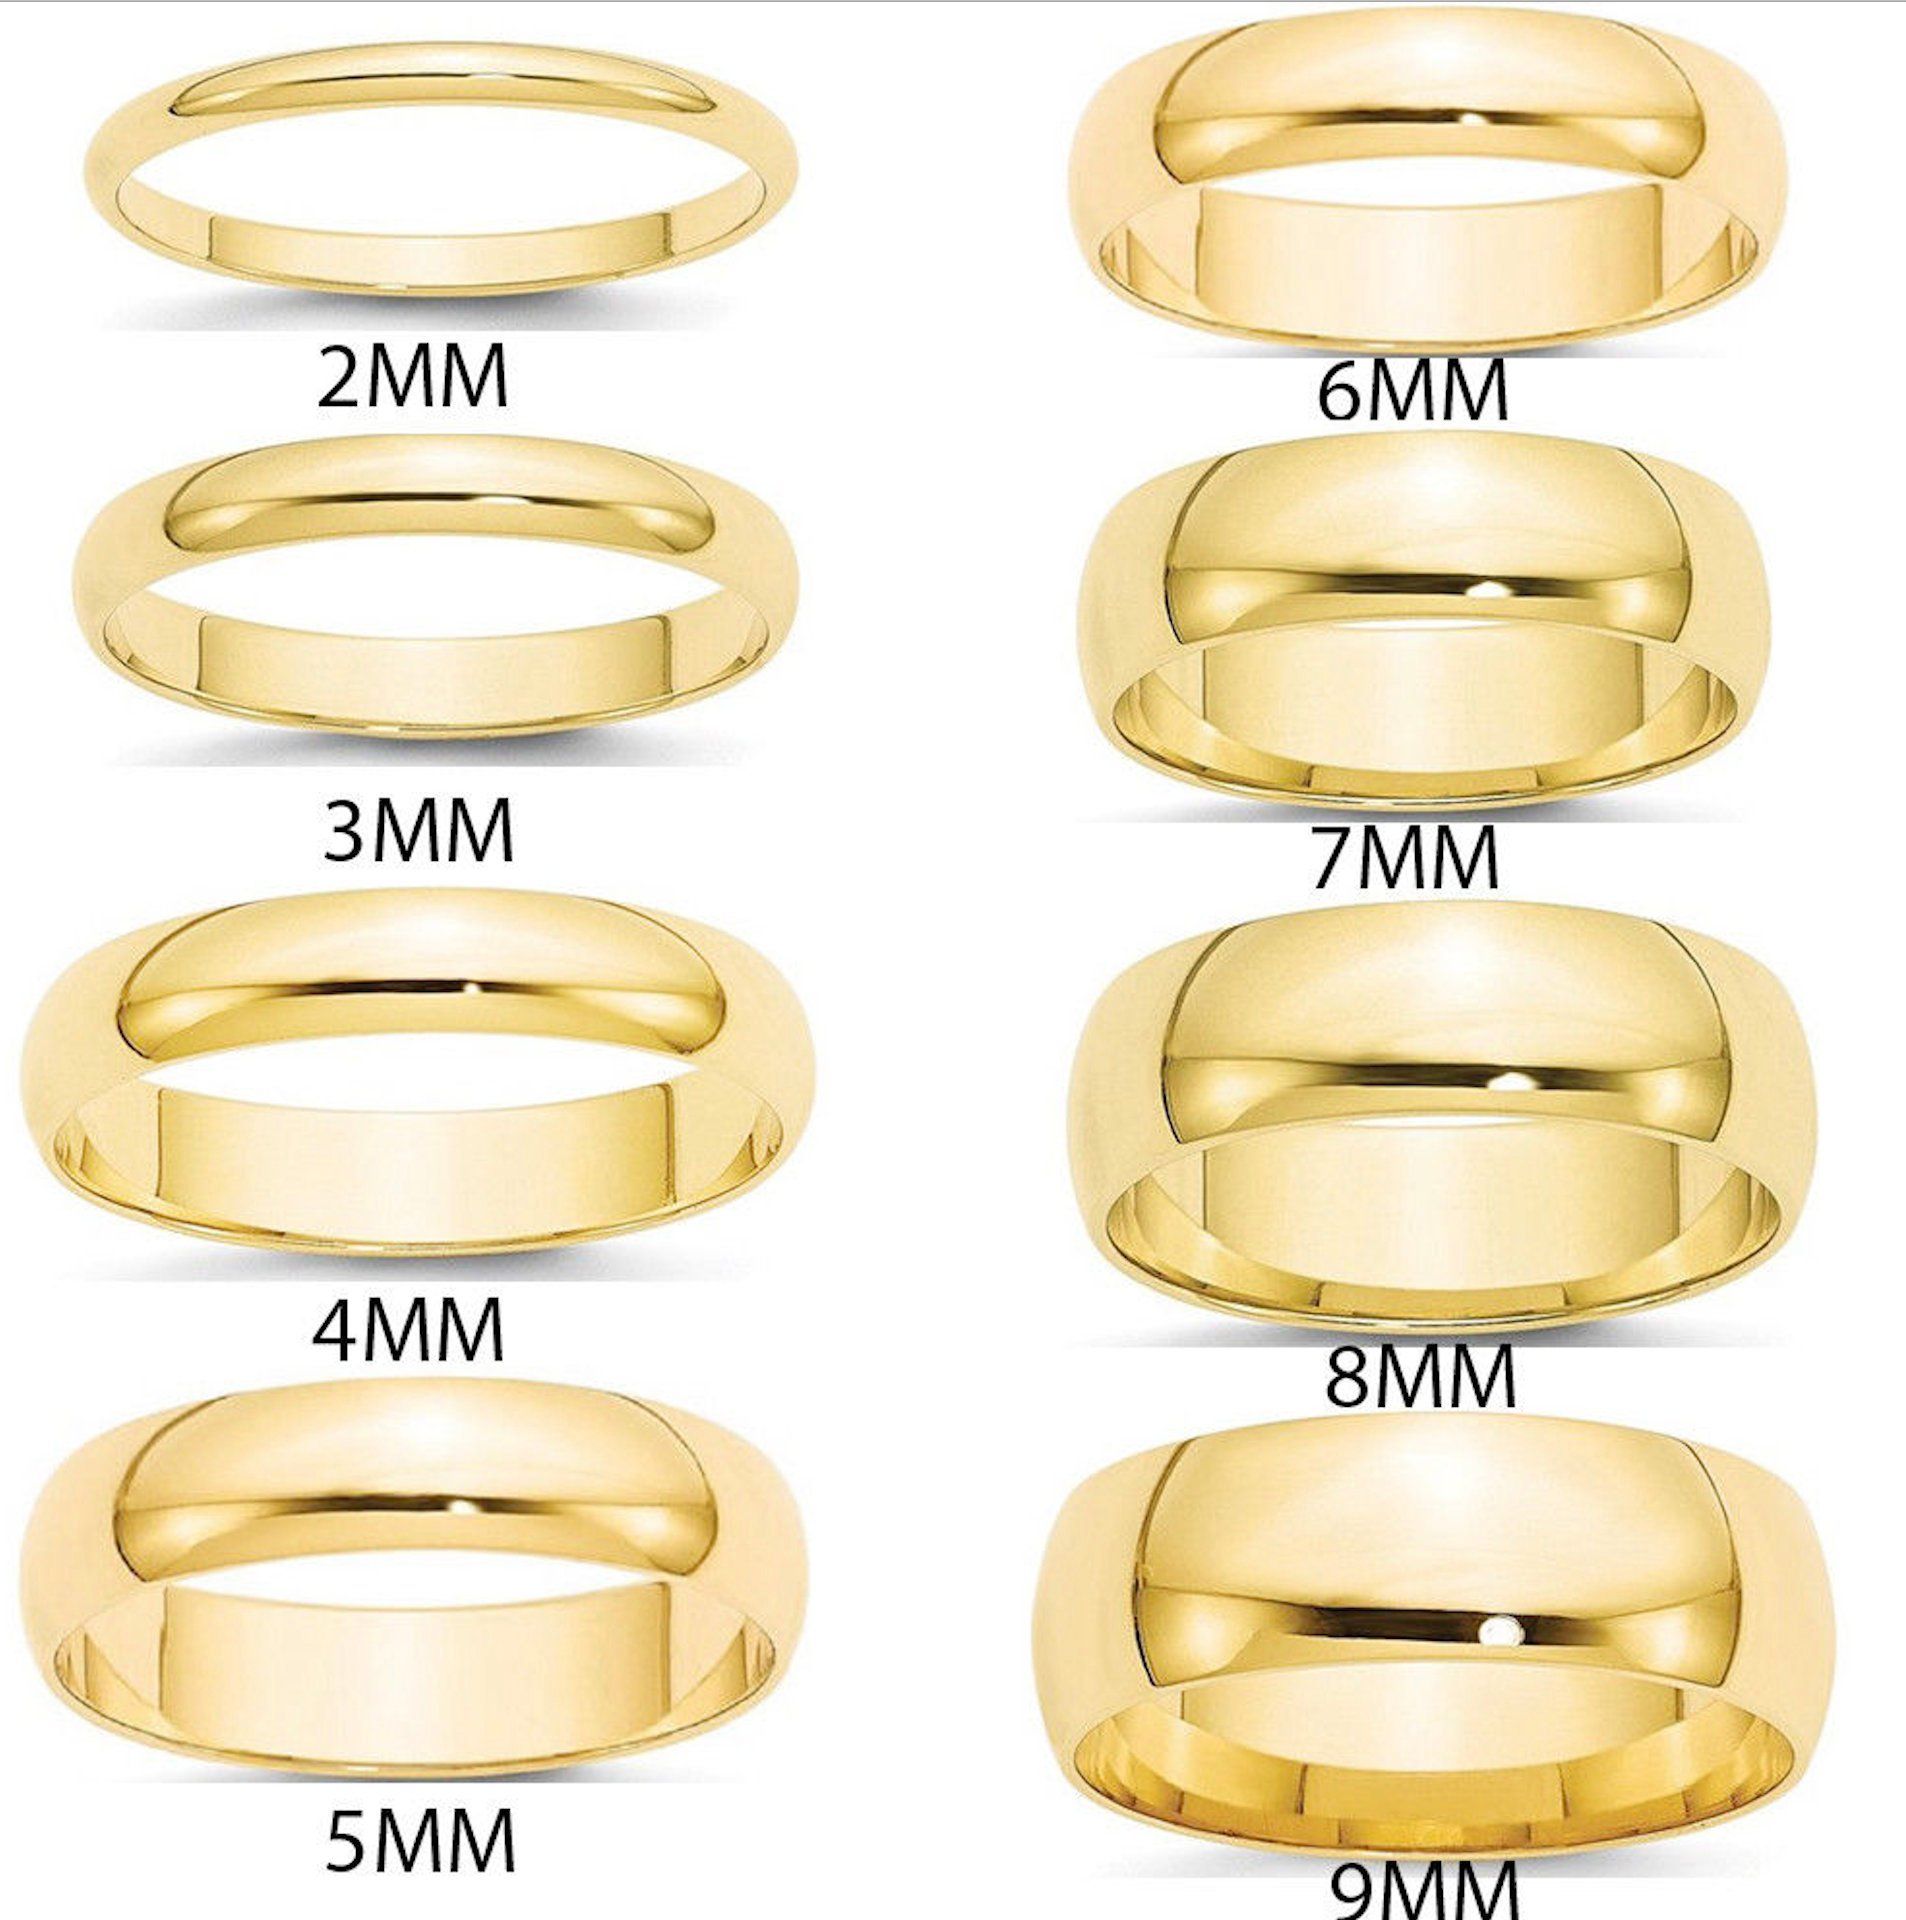 Толщина кольца 1 мм. Обручальные кольцо шириной 4,5 мм. Ширина кольца 2.5 мм. 6мл ширина кольца золотого. Кольцо шириной 6 мм.